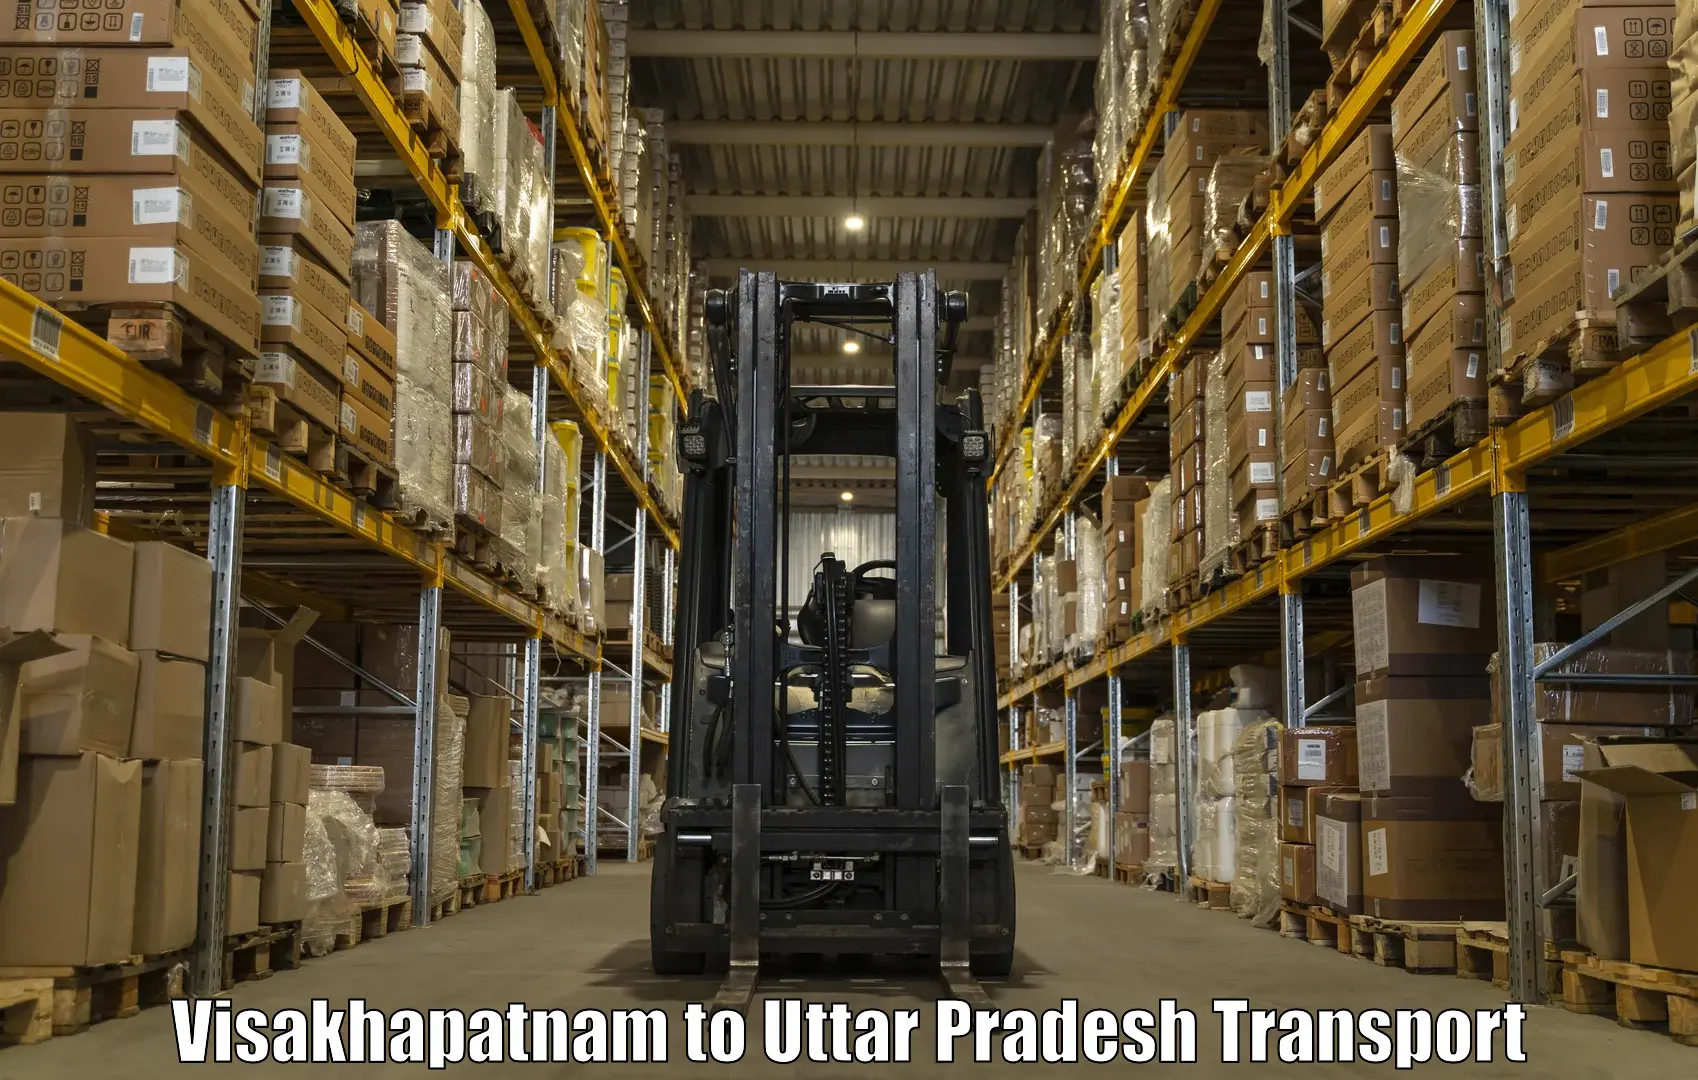 Nearby transport service Visakhapatnam to Uttar Pradesh